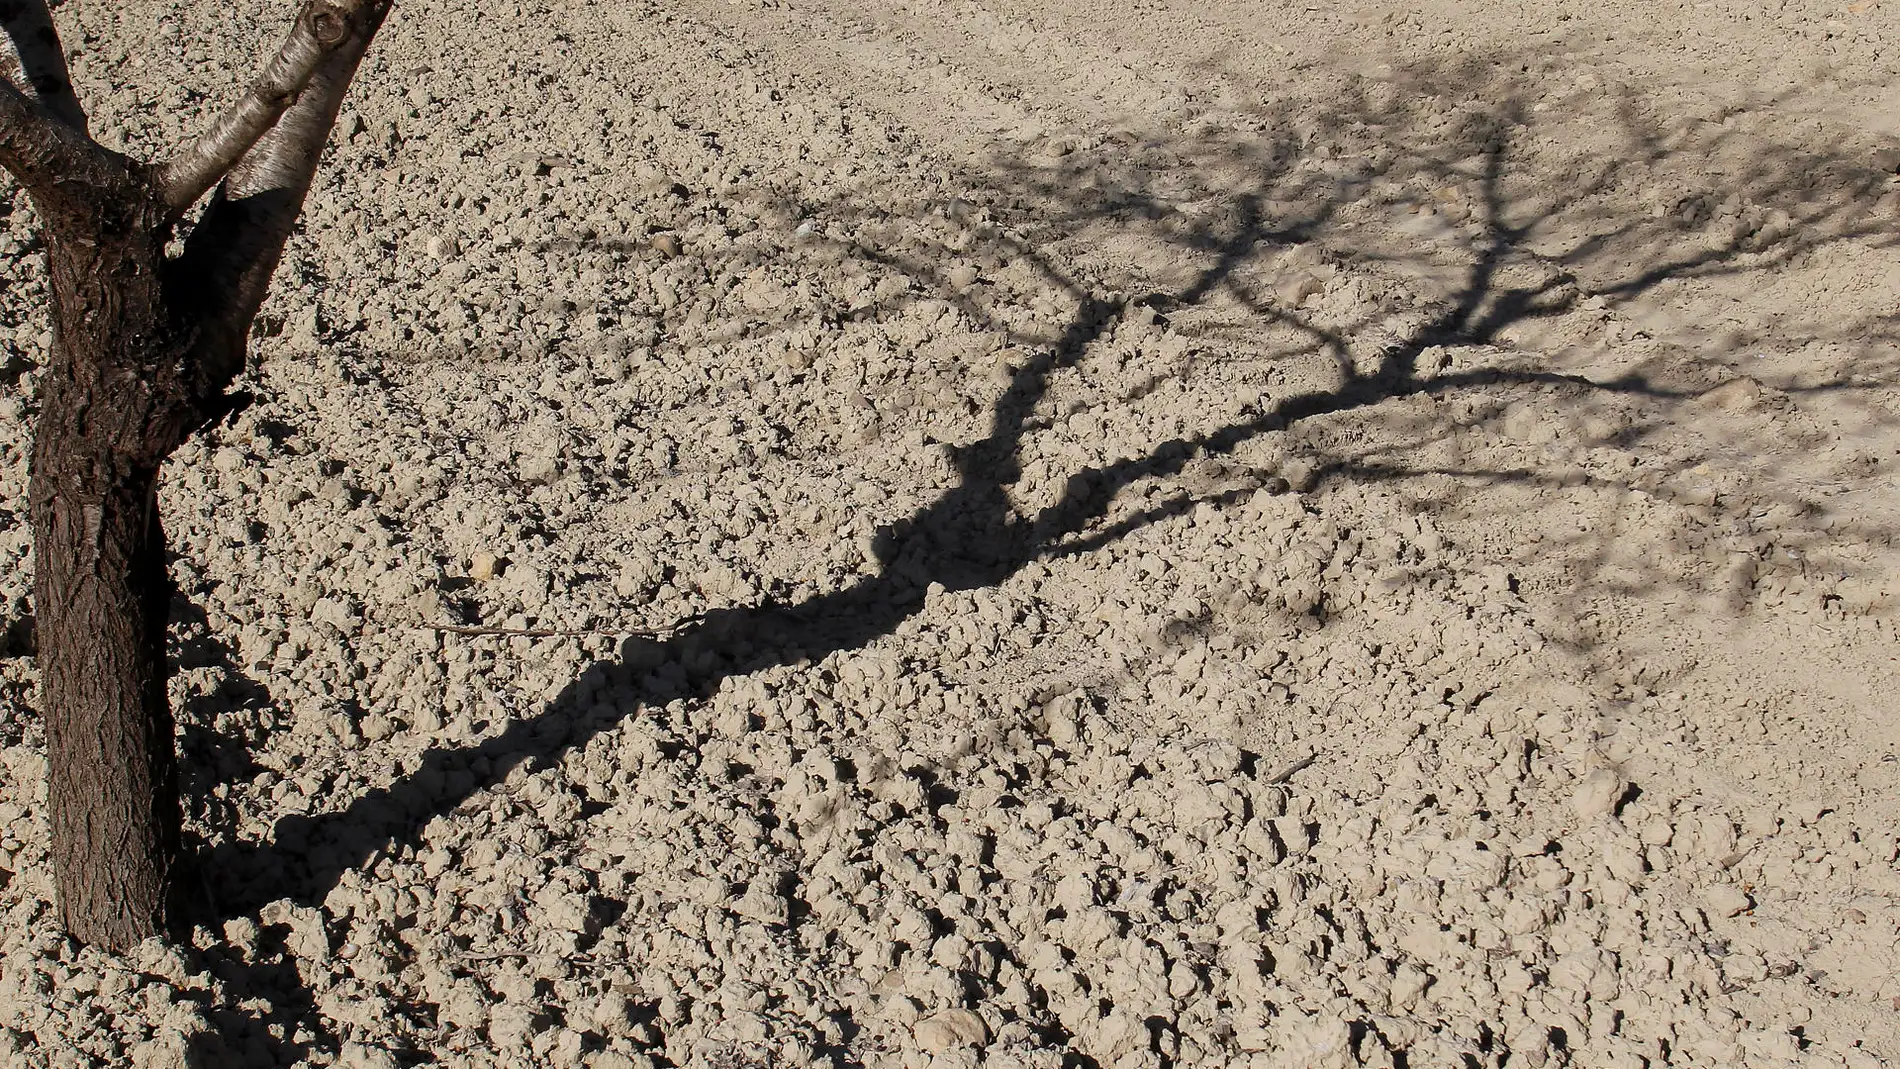 Detalle de la sombra de un almendro sobre el suelo reseco de un campo de alicante